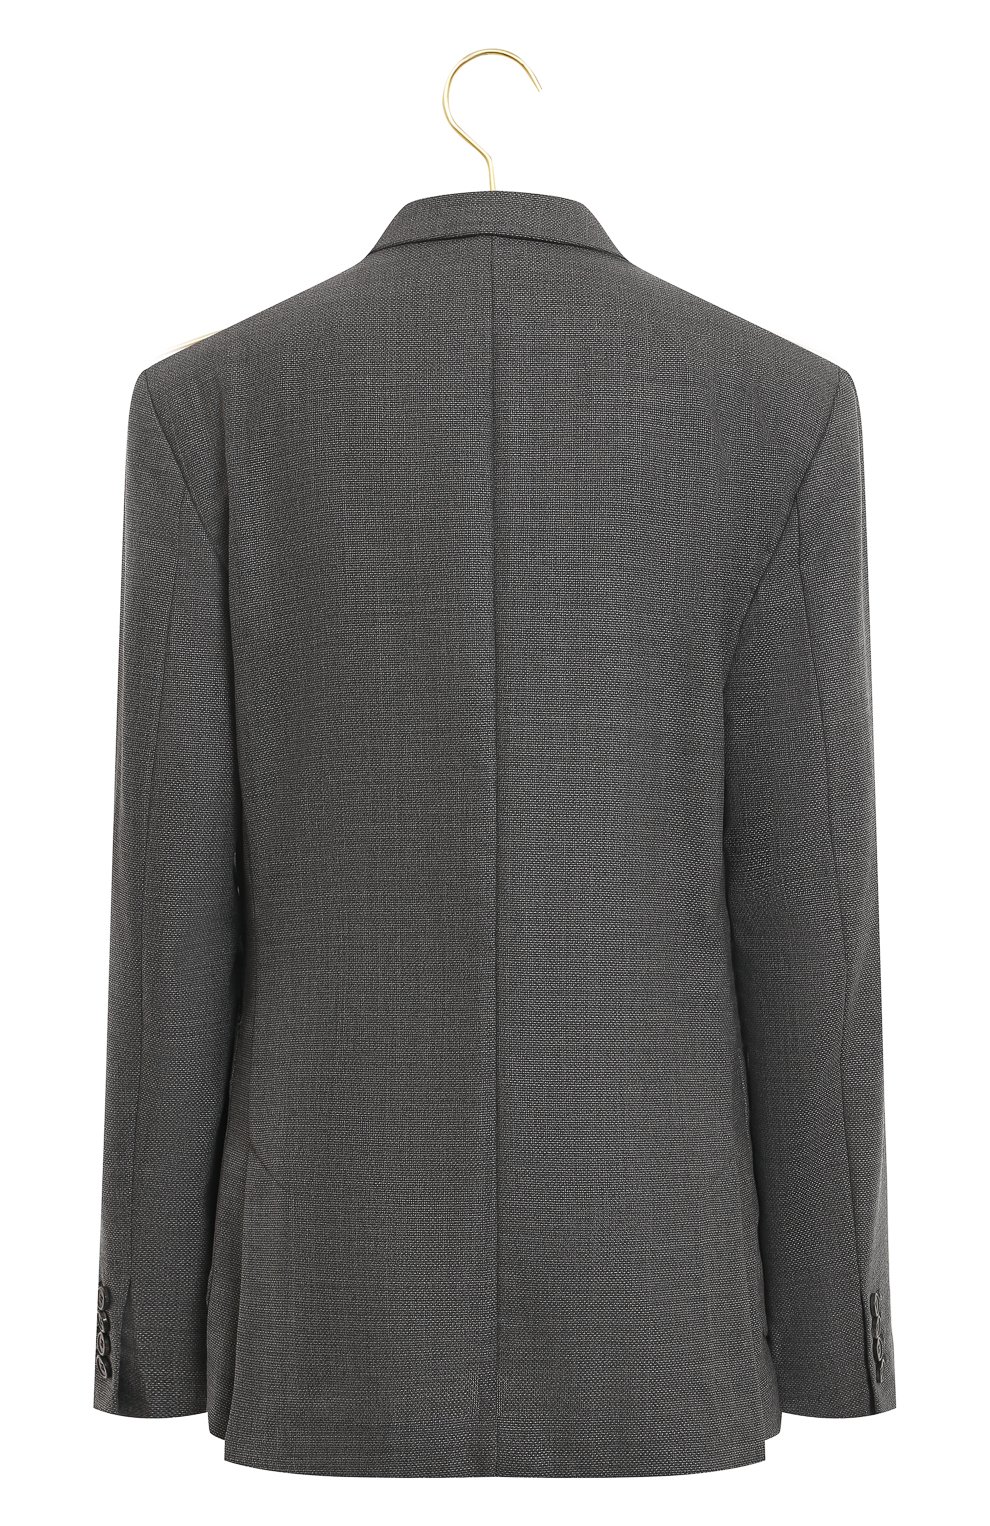 Шерстяной пиджак | Ami Paris | Серый - 2